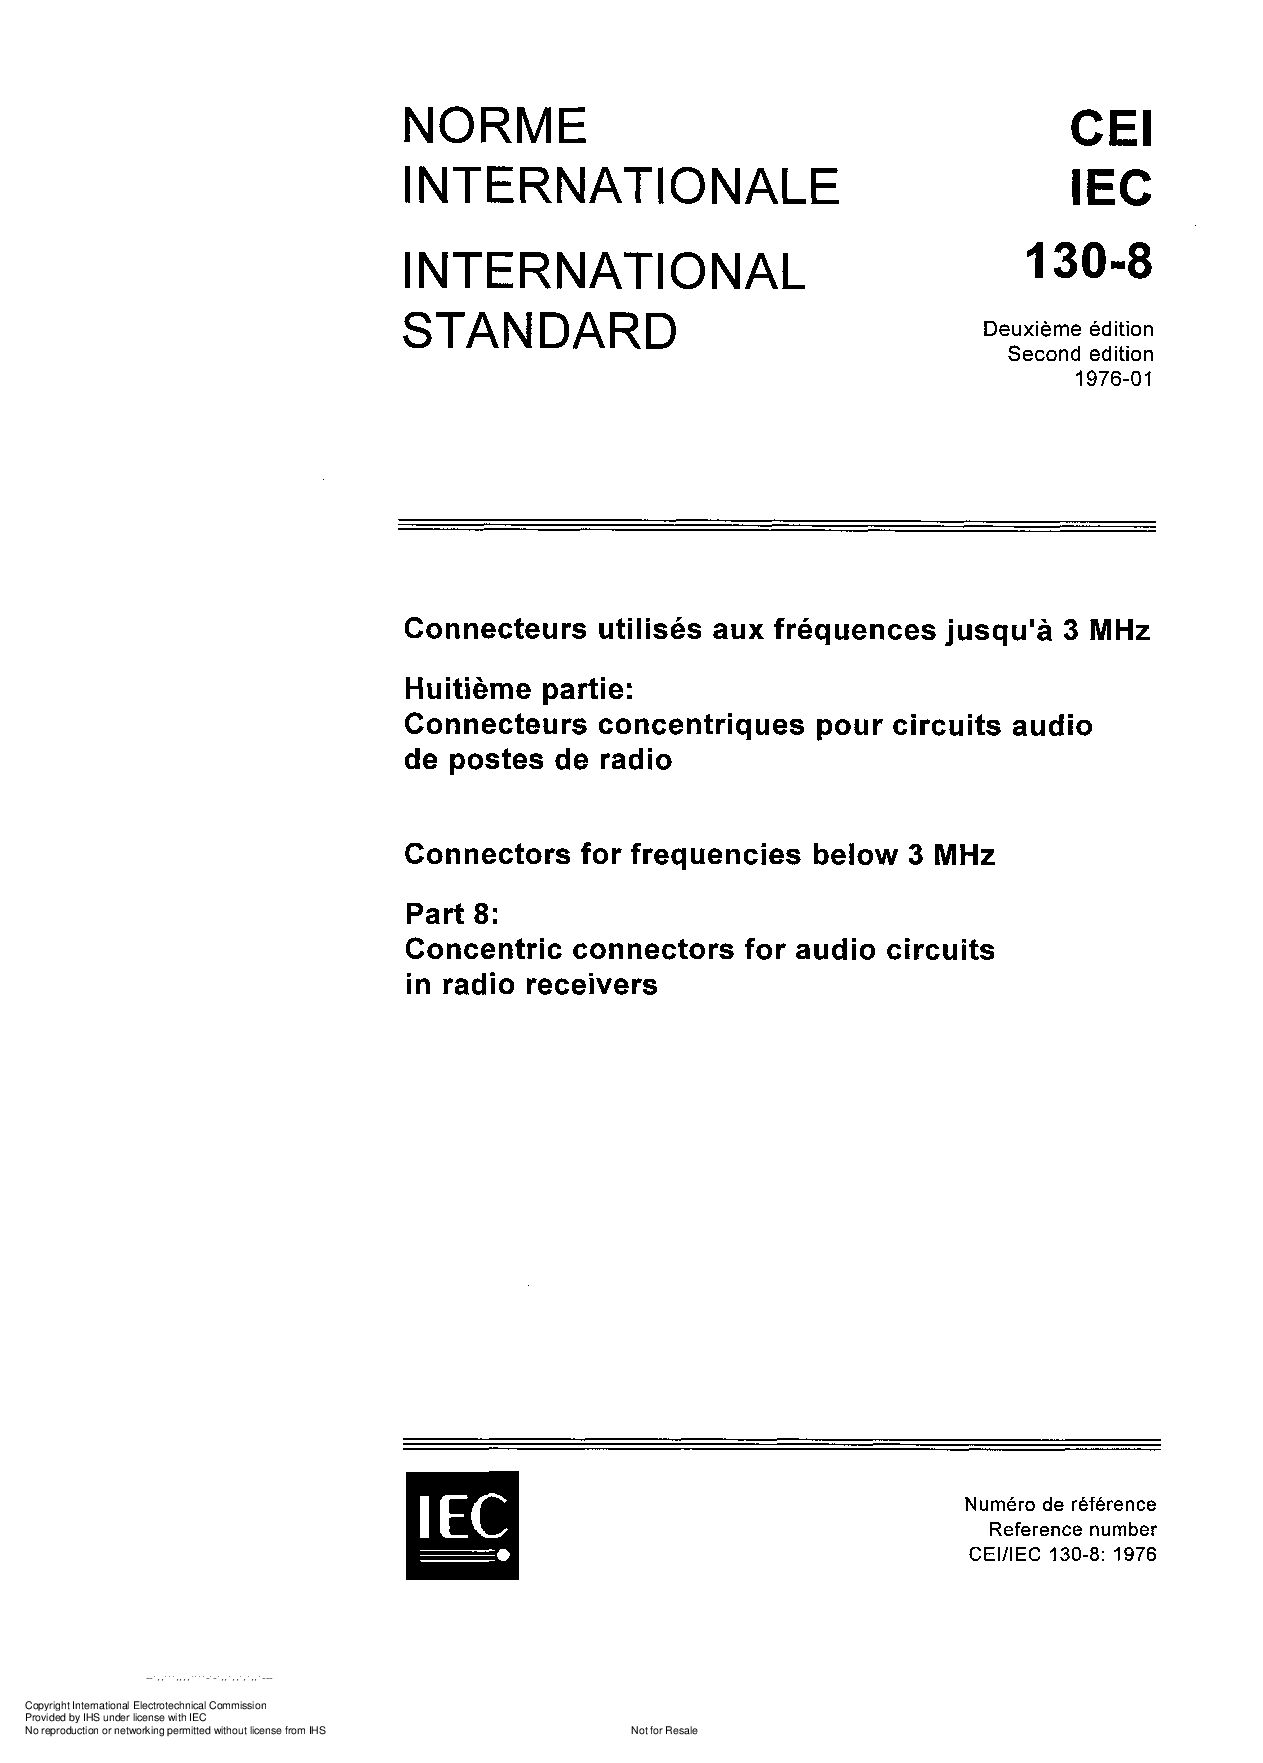 IEC 60130-8:1976